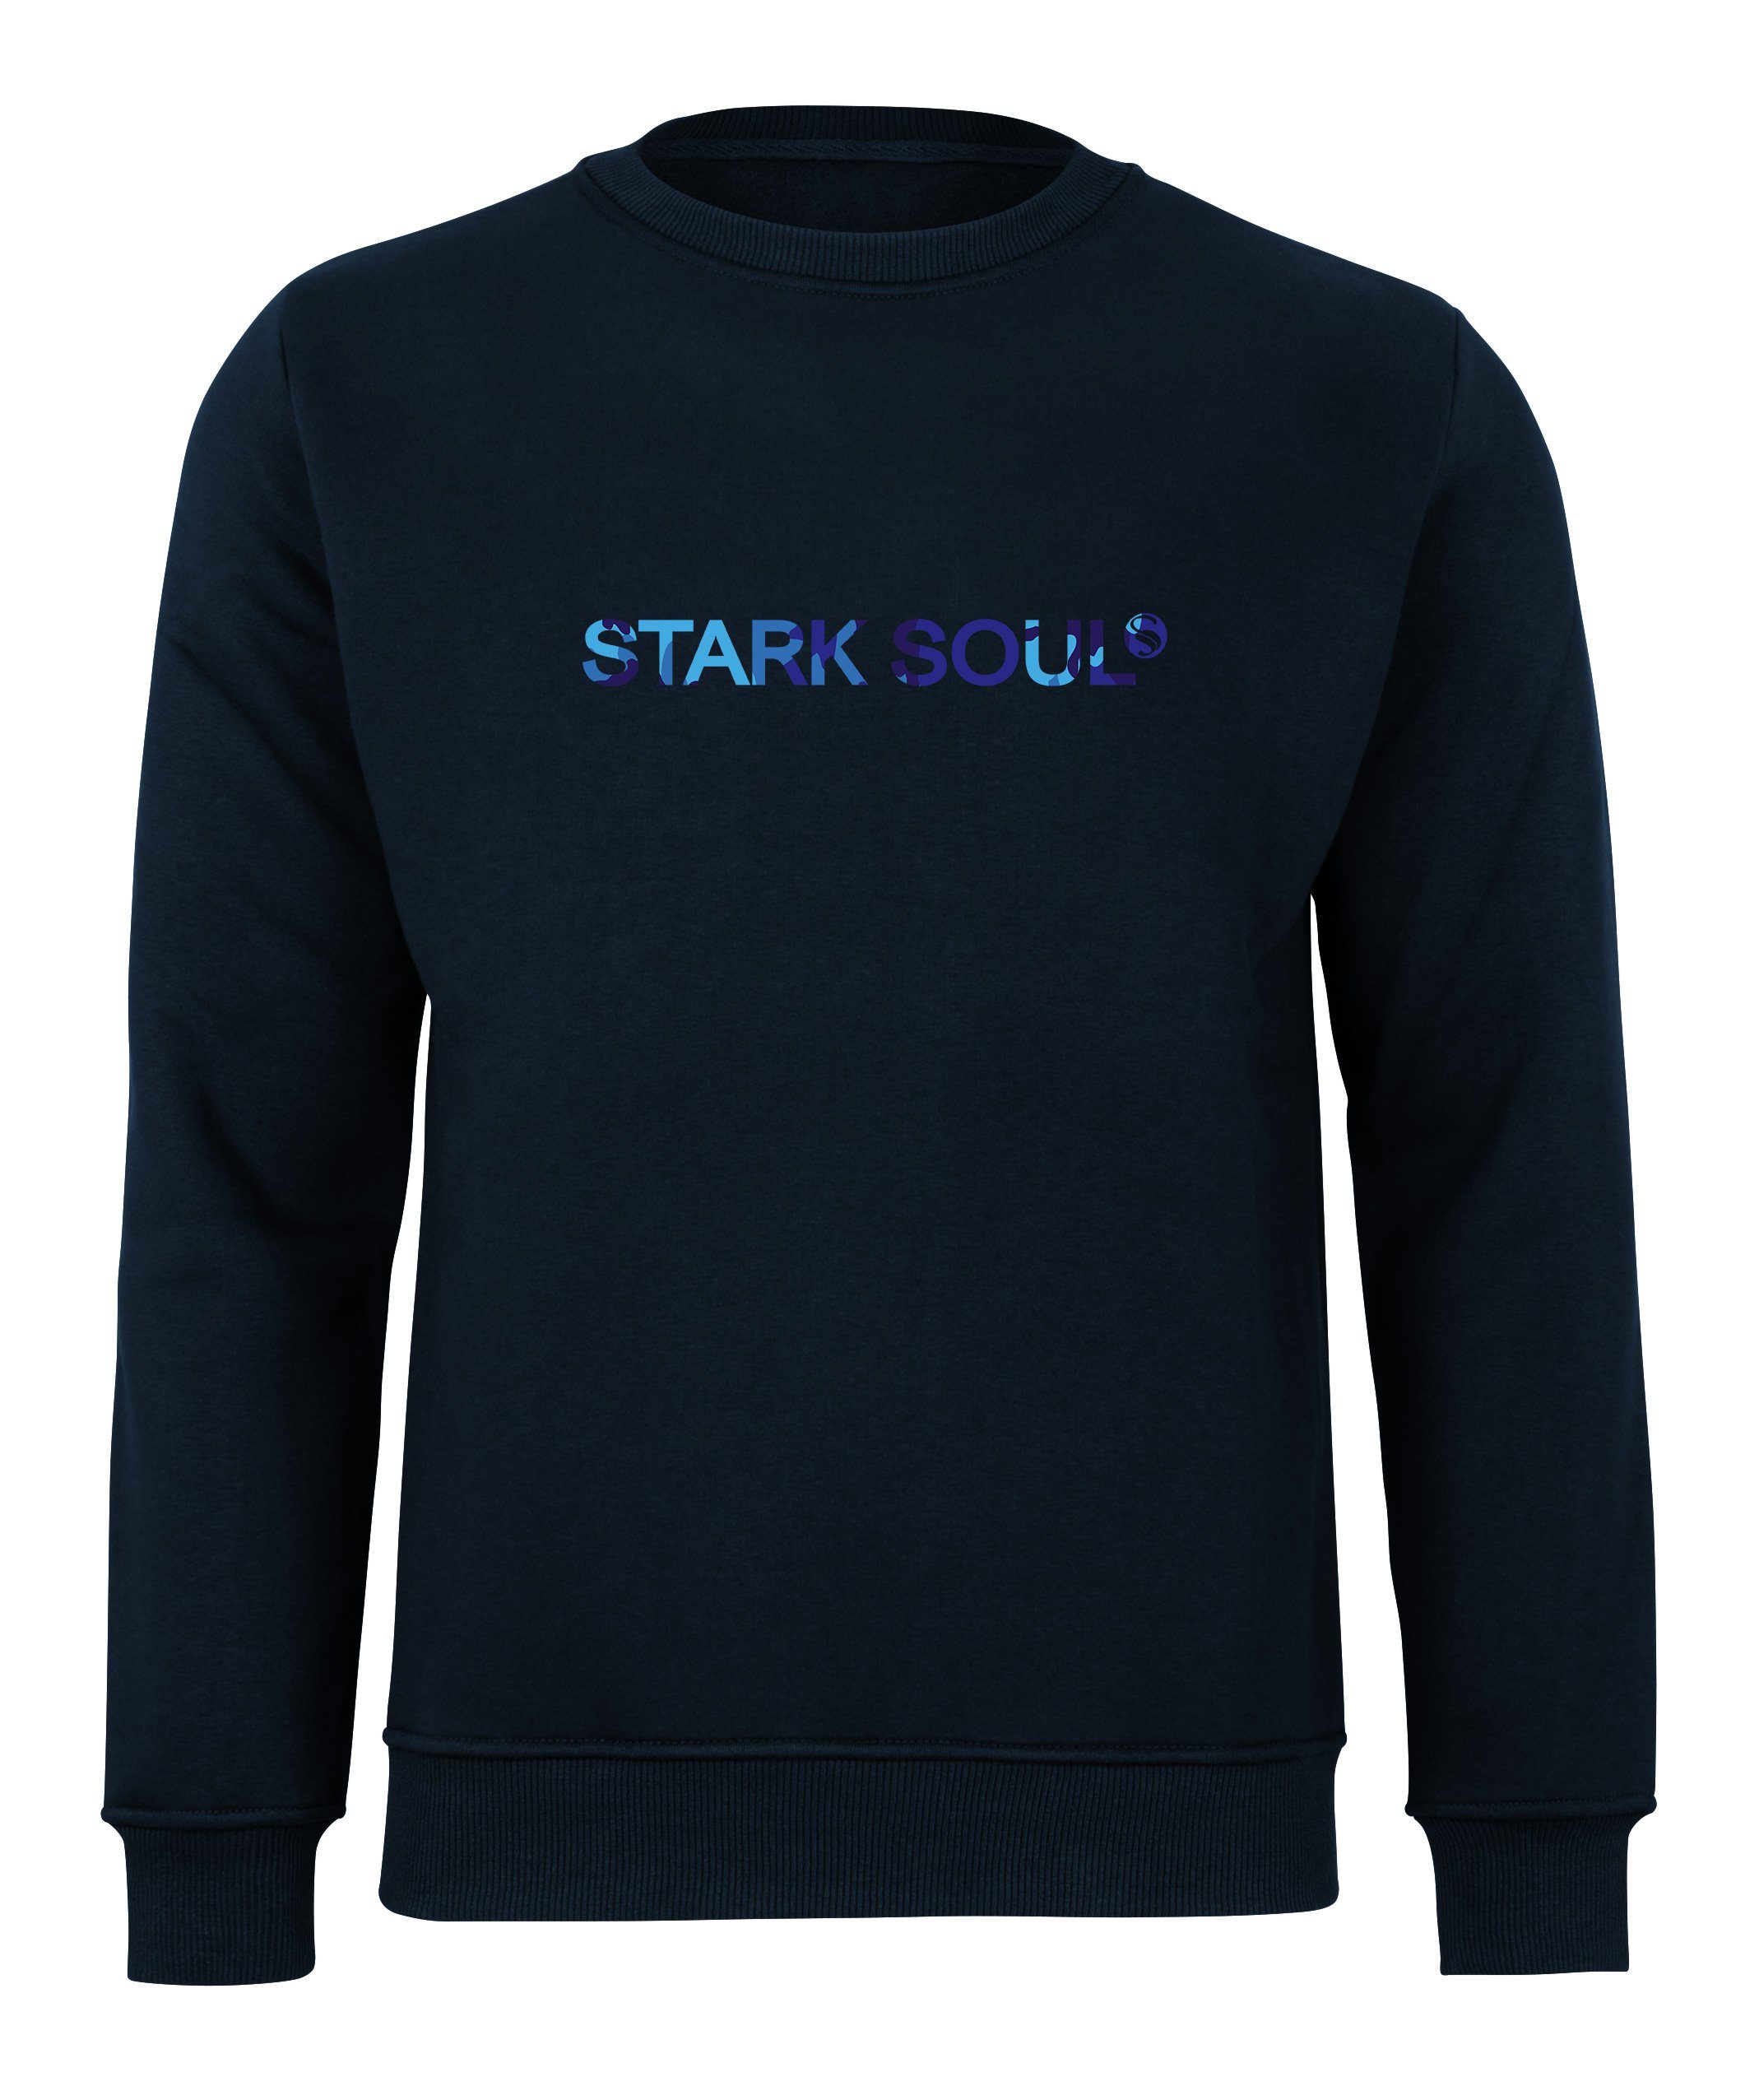 mit Soul® French-Terry-Rundhals-Sweatshirt, Sweatshirt angeraut Stark "Stark in Soul®"-Schriftzug Marine-Blau Camouflage-Optik Innen